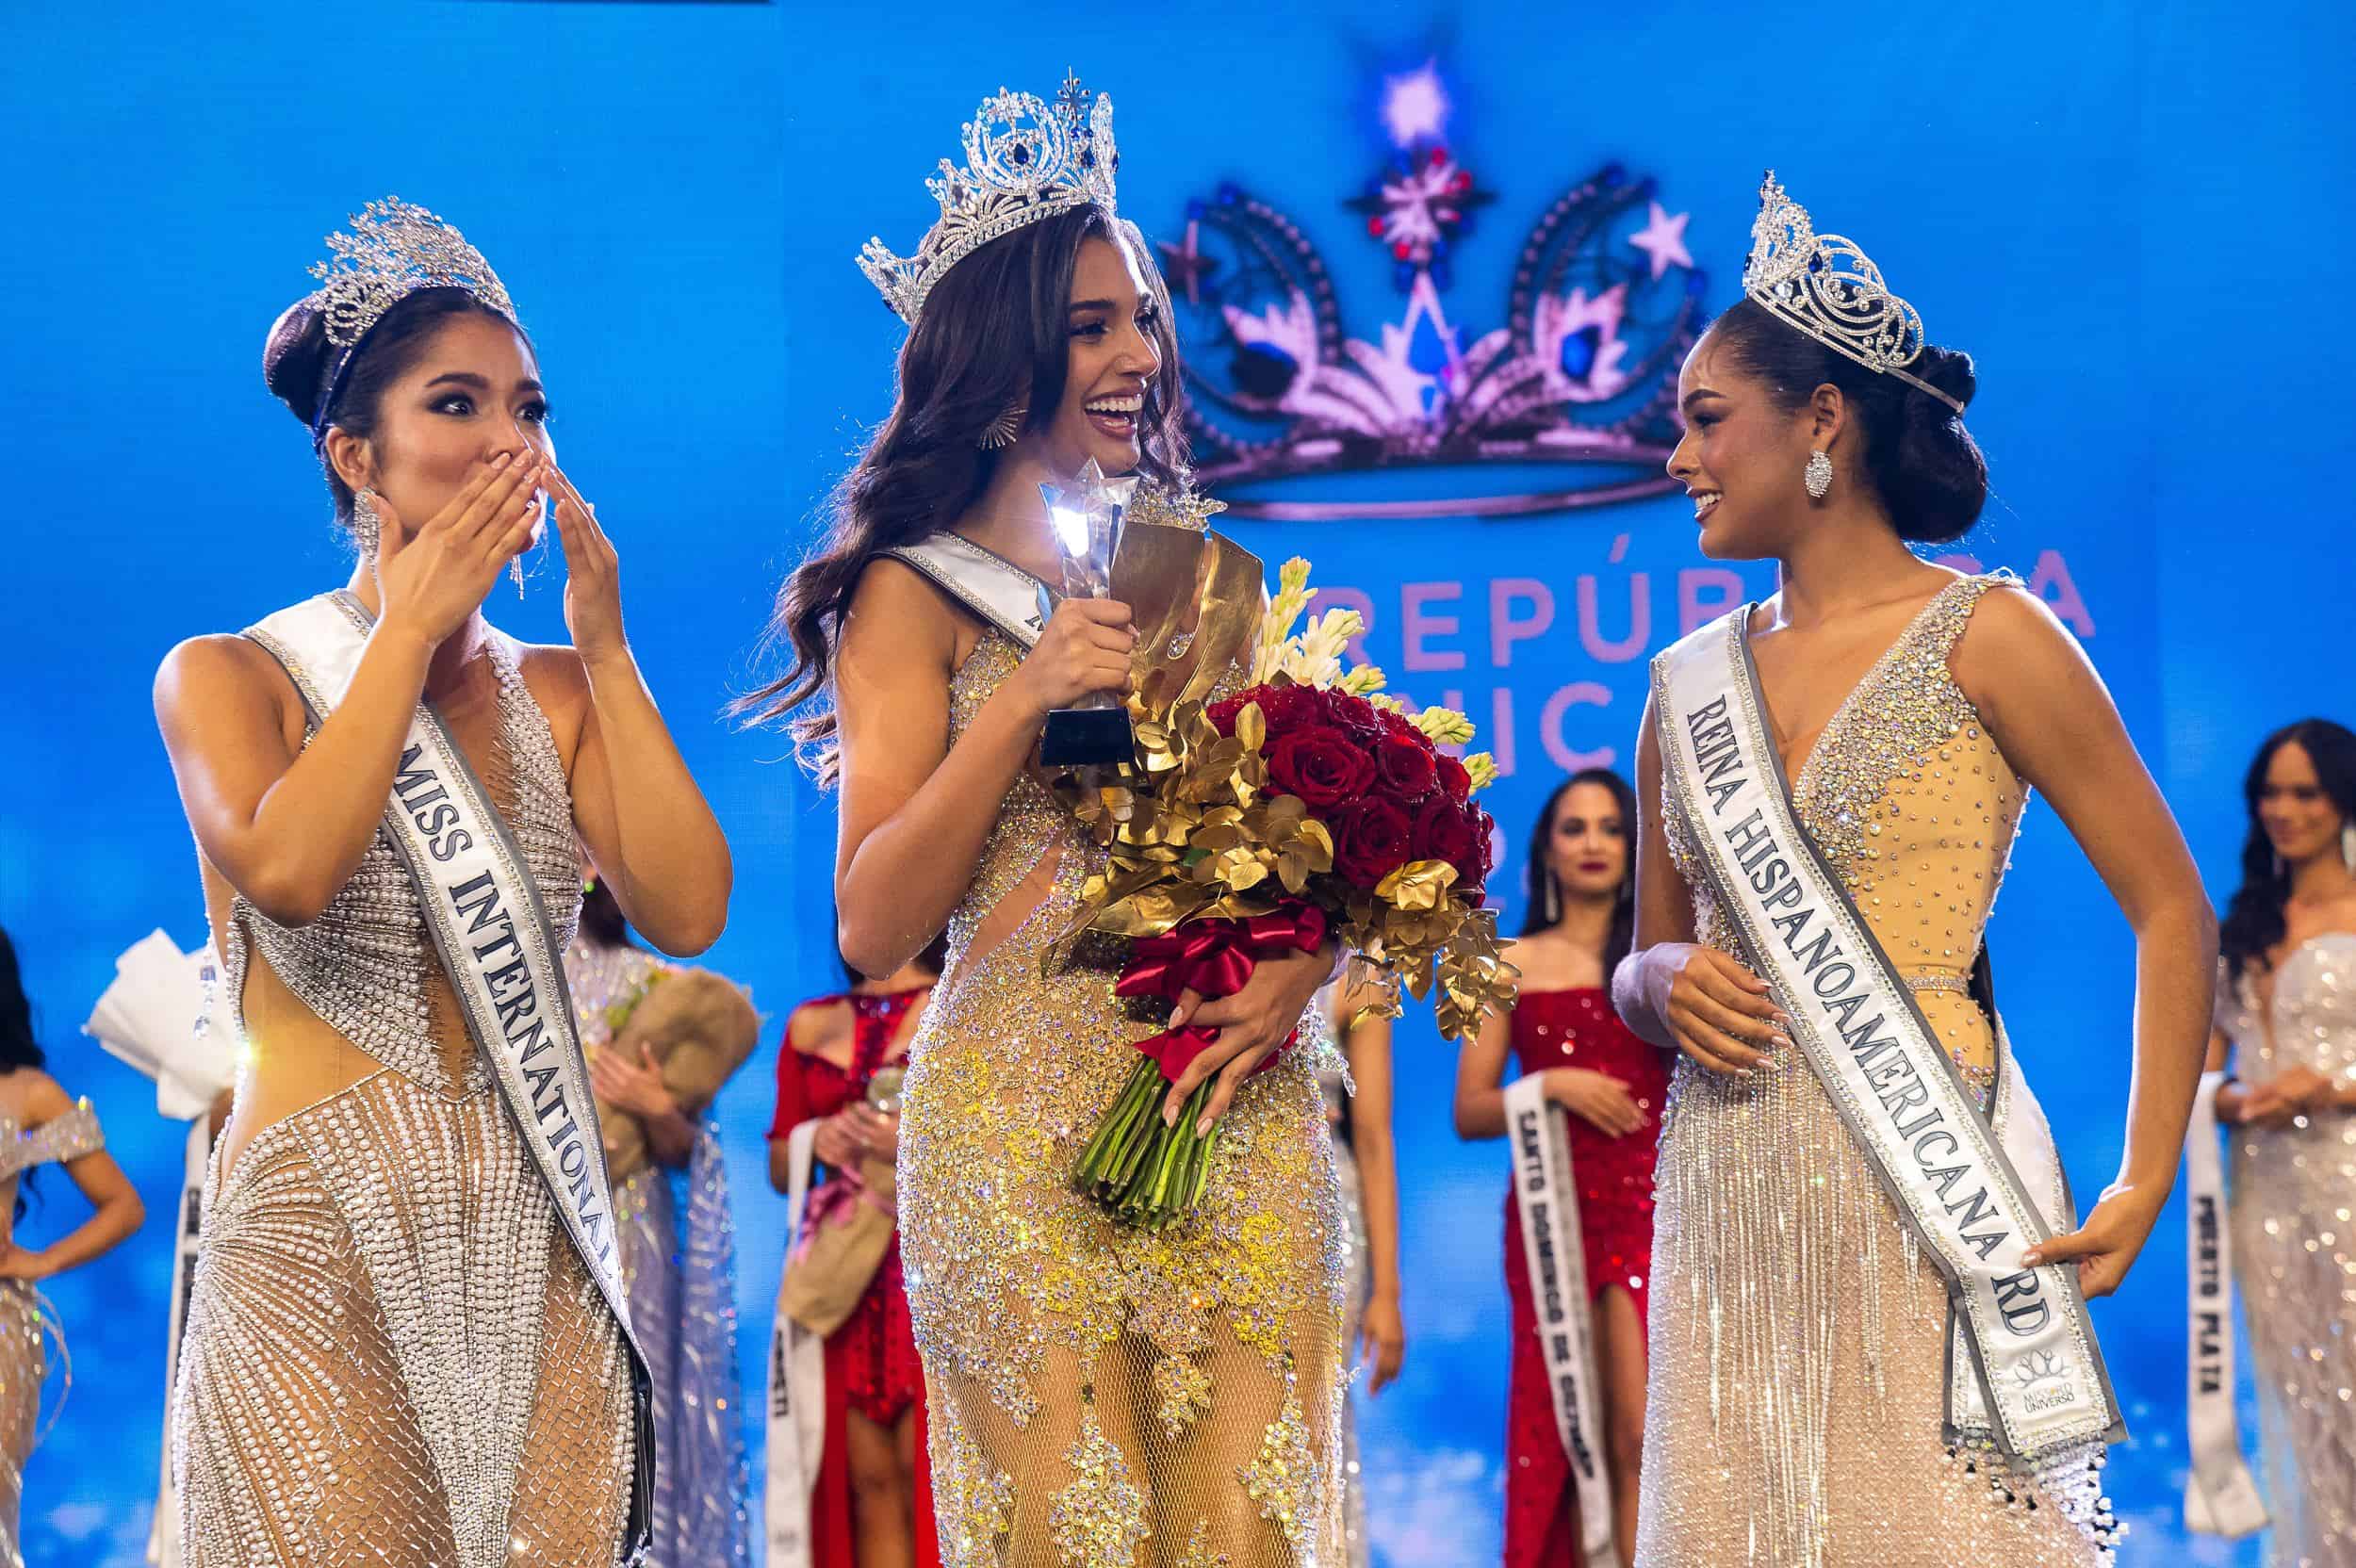 Miyuki Cruz, Celinee Santos y Mariela Mota representarán a República Dominicana en Miss Internacional, Miss Universo y Miss Hispanoamérica, respectivamente.